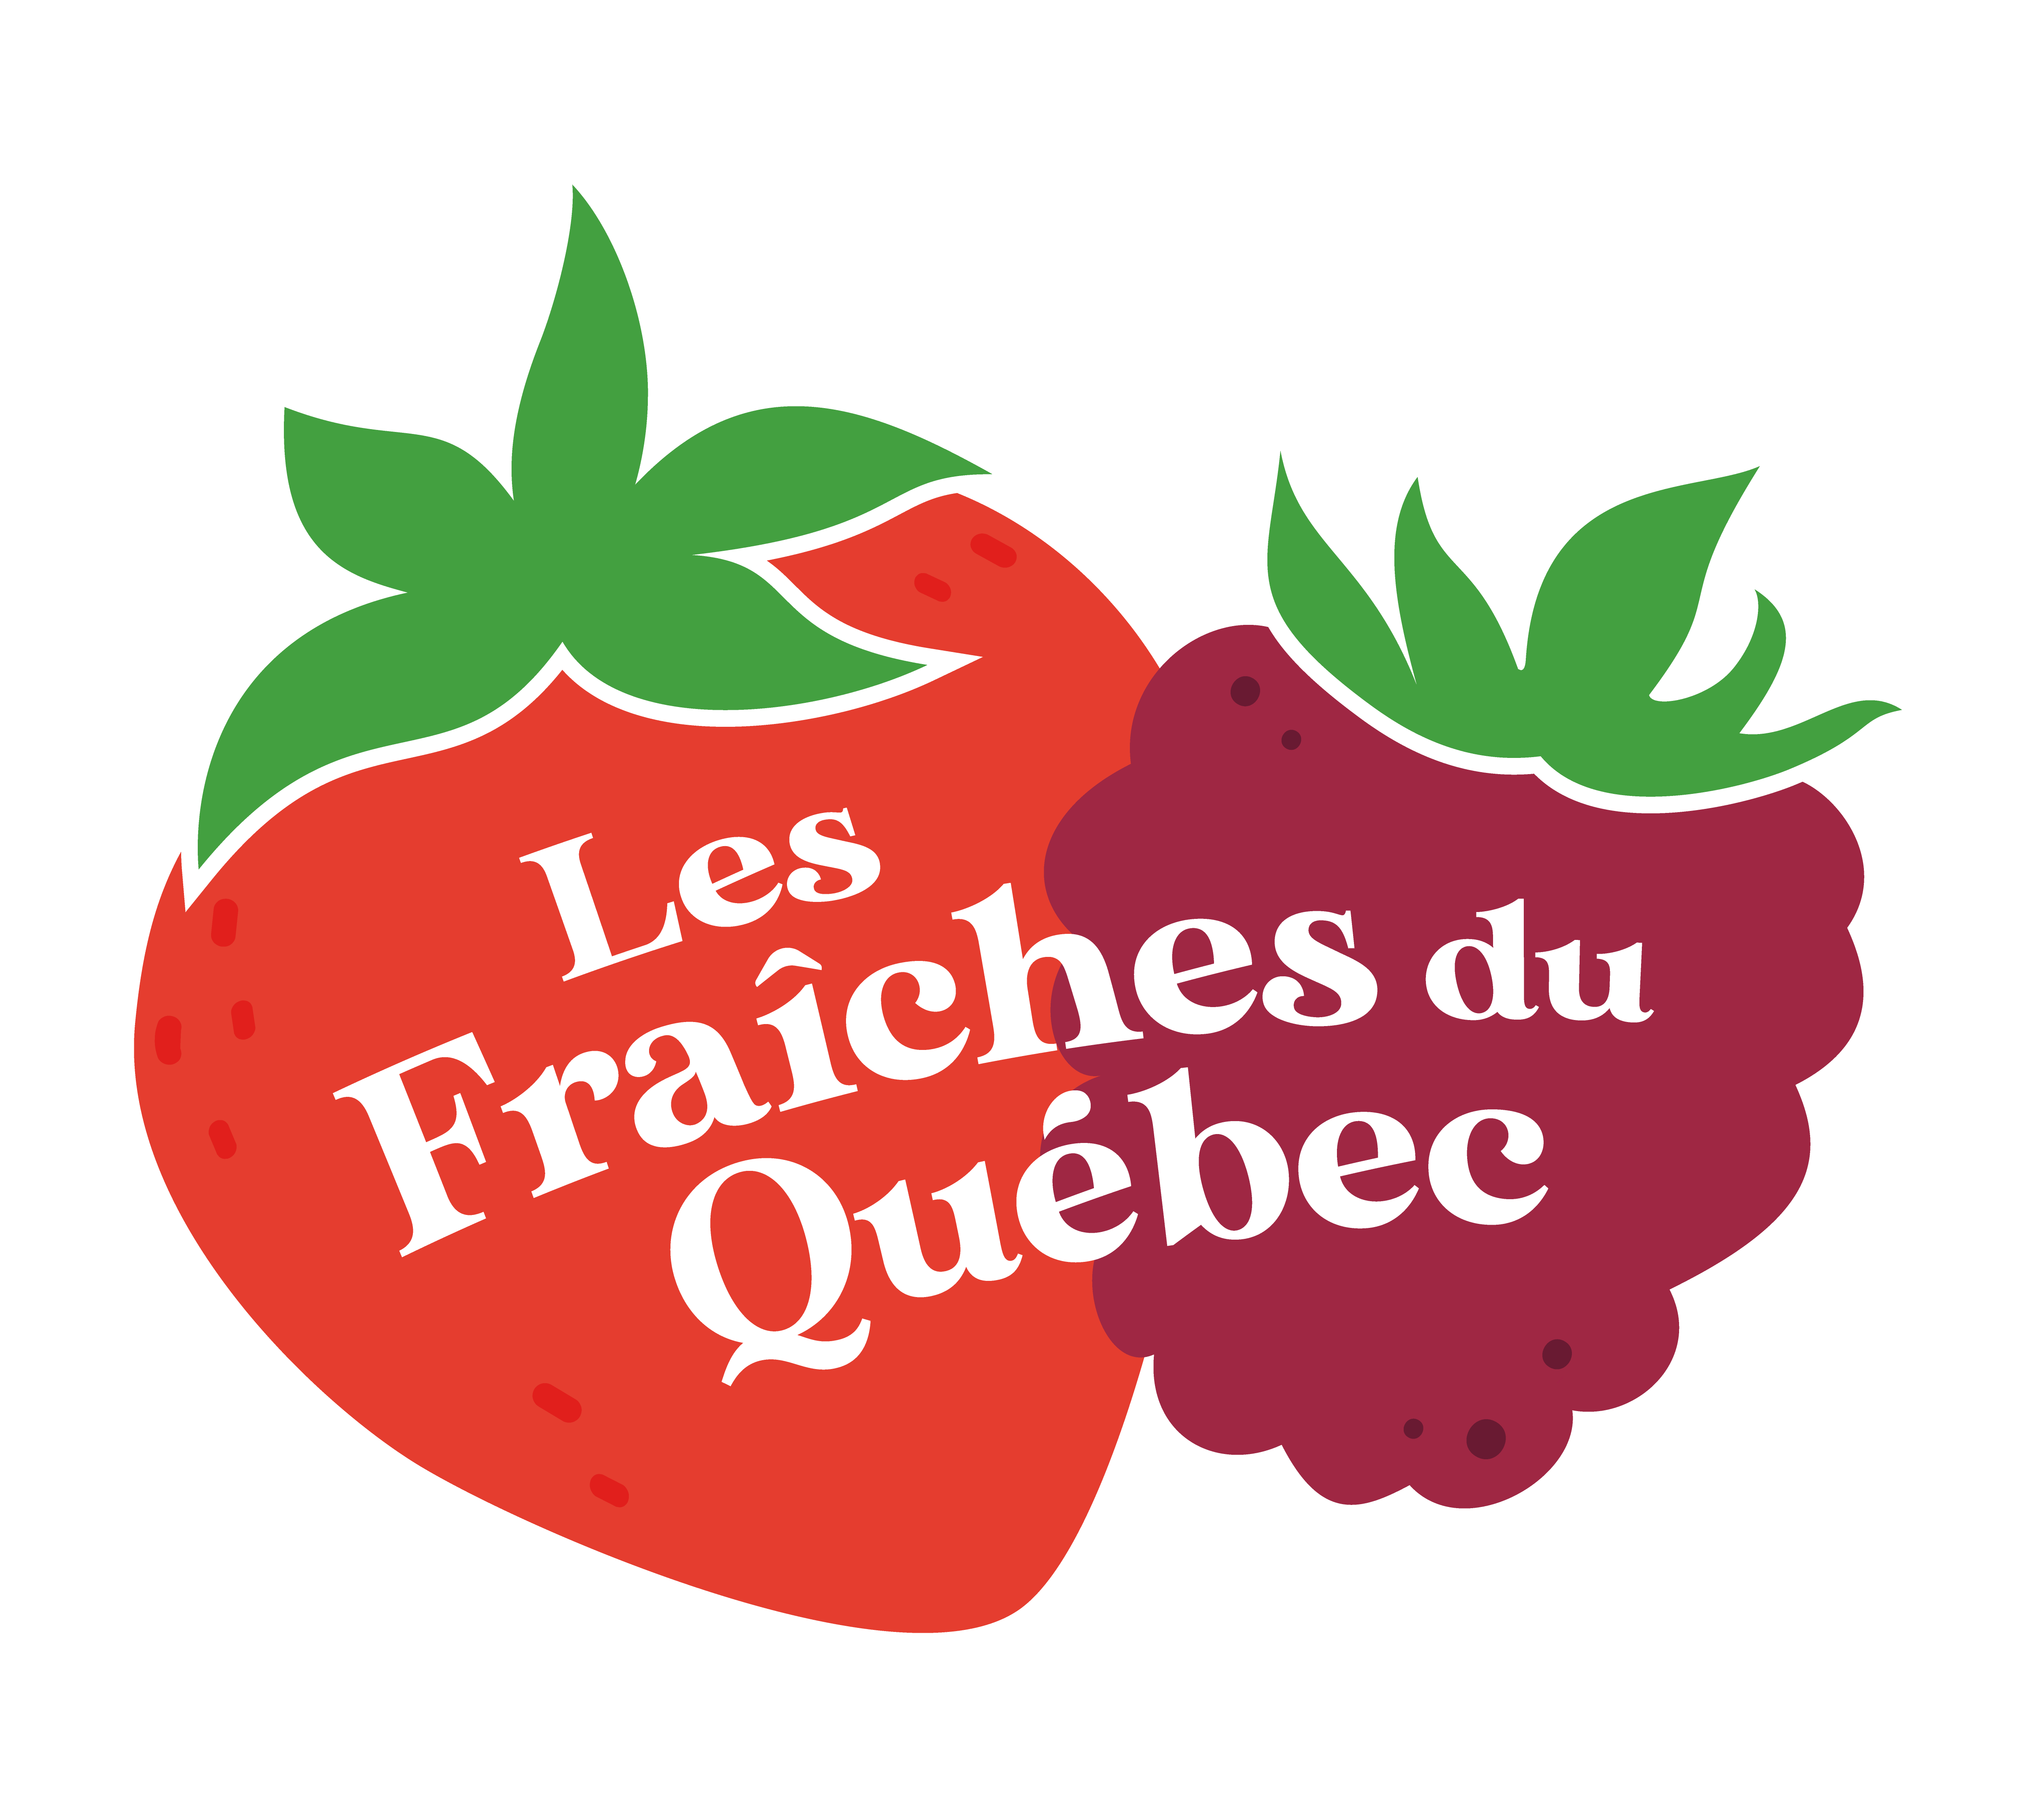 Fraises et Framboises du Québec